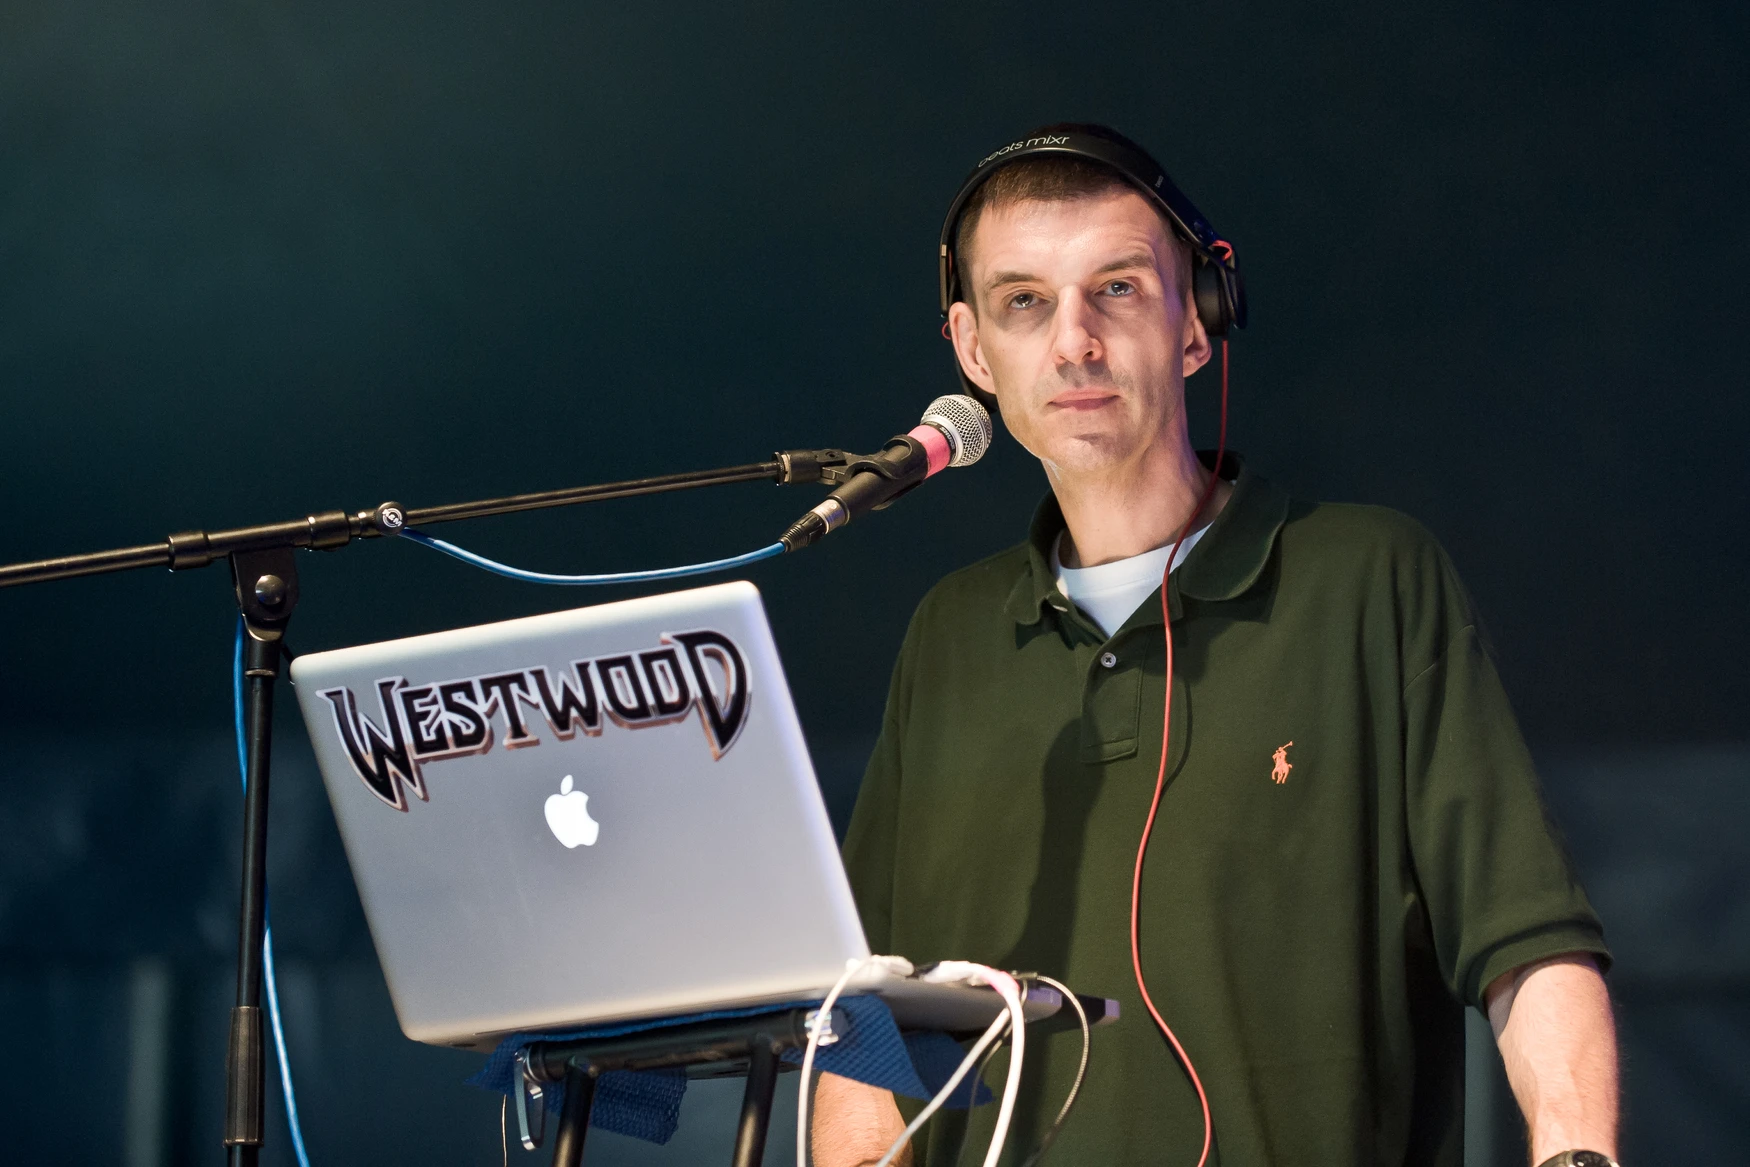 BBC Radio 1 veteran Tim Westwood accused of multiple sexual assaultsTim Westwood